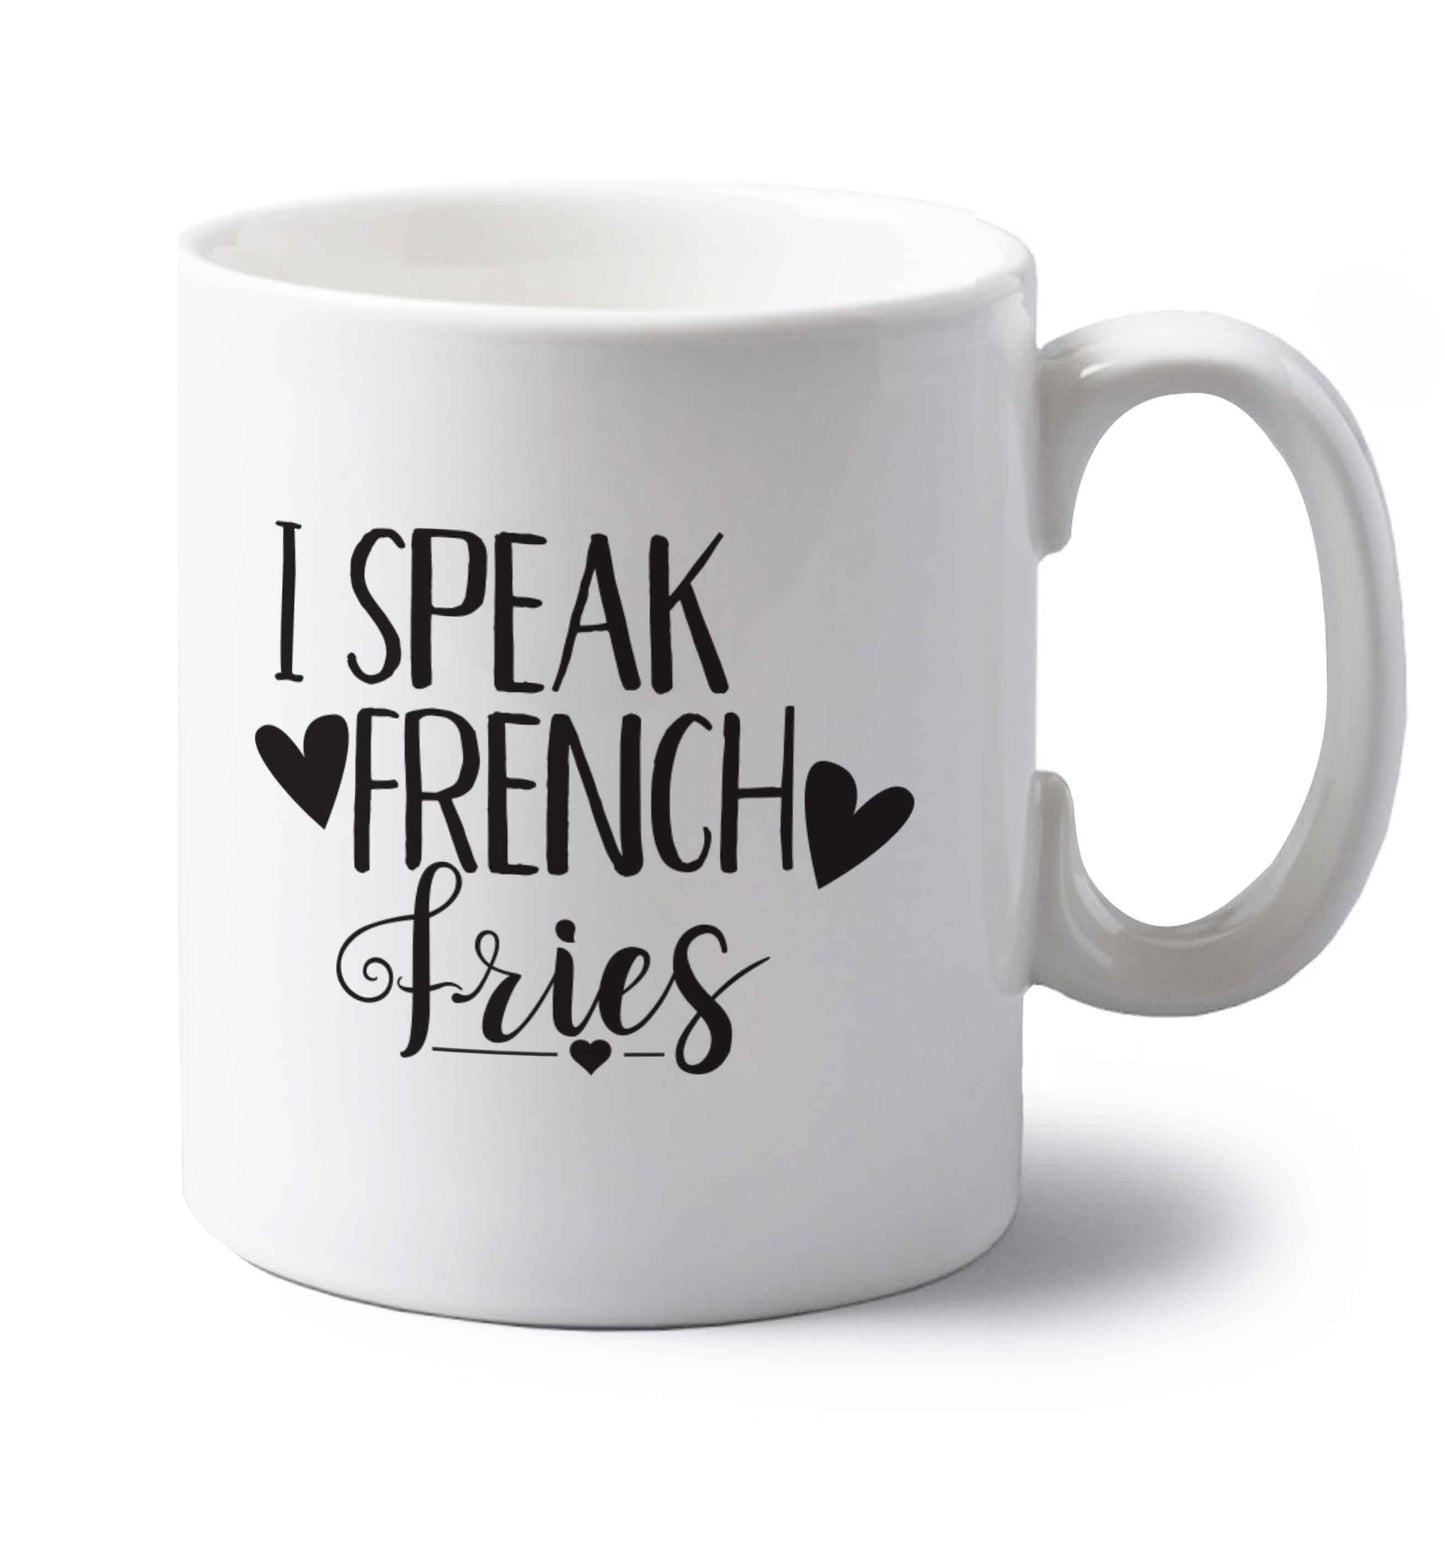 I speak French fries left handed white ceramic mug 